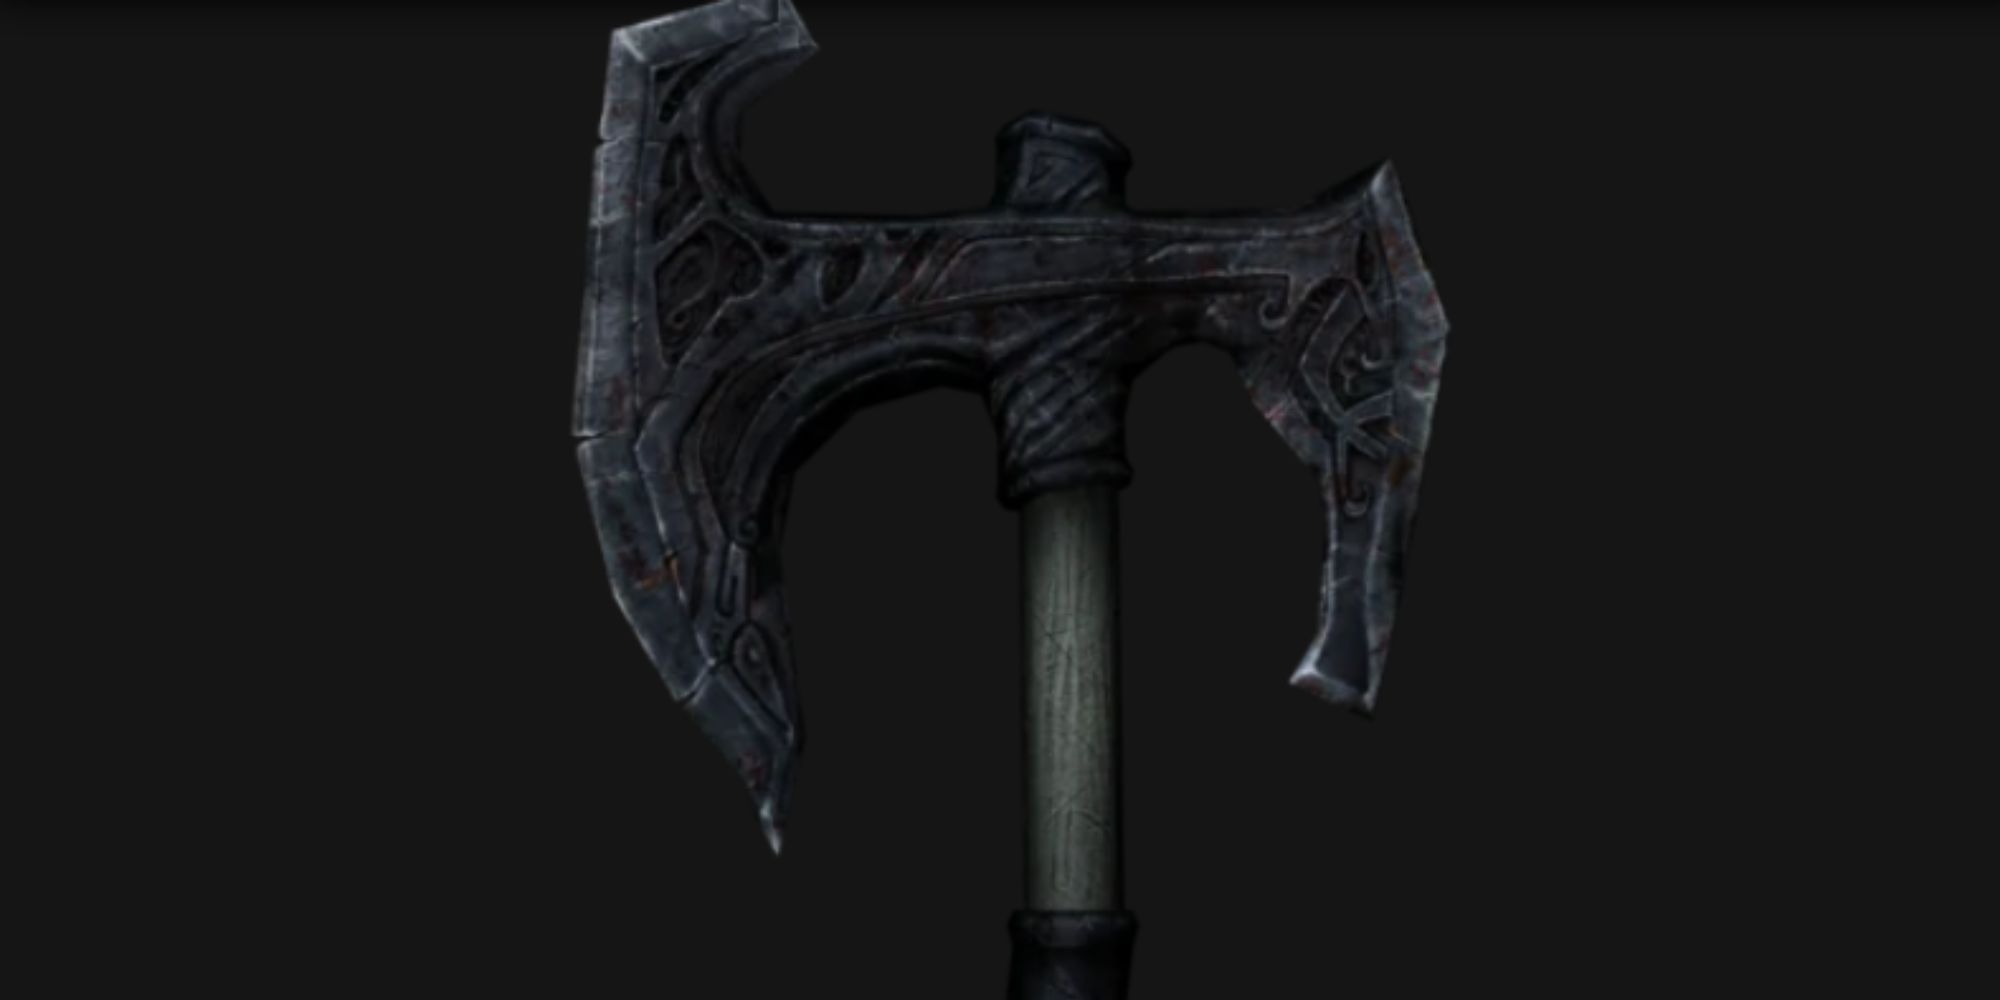 skyrim_ancient_nord_war_axe_dark_background